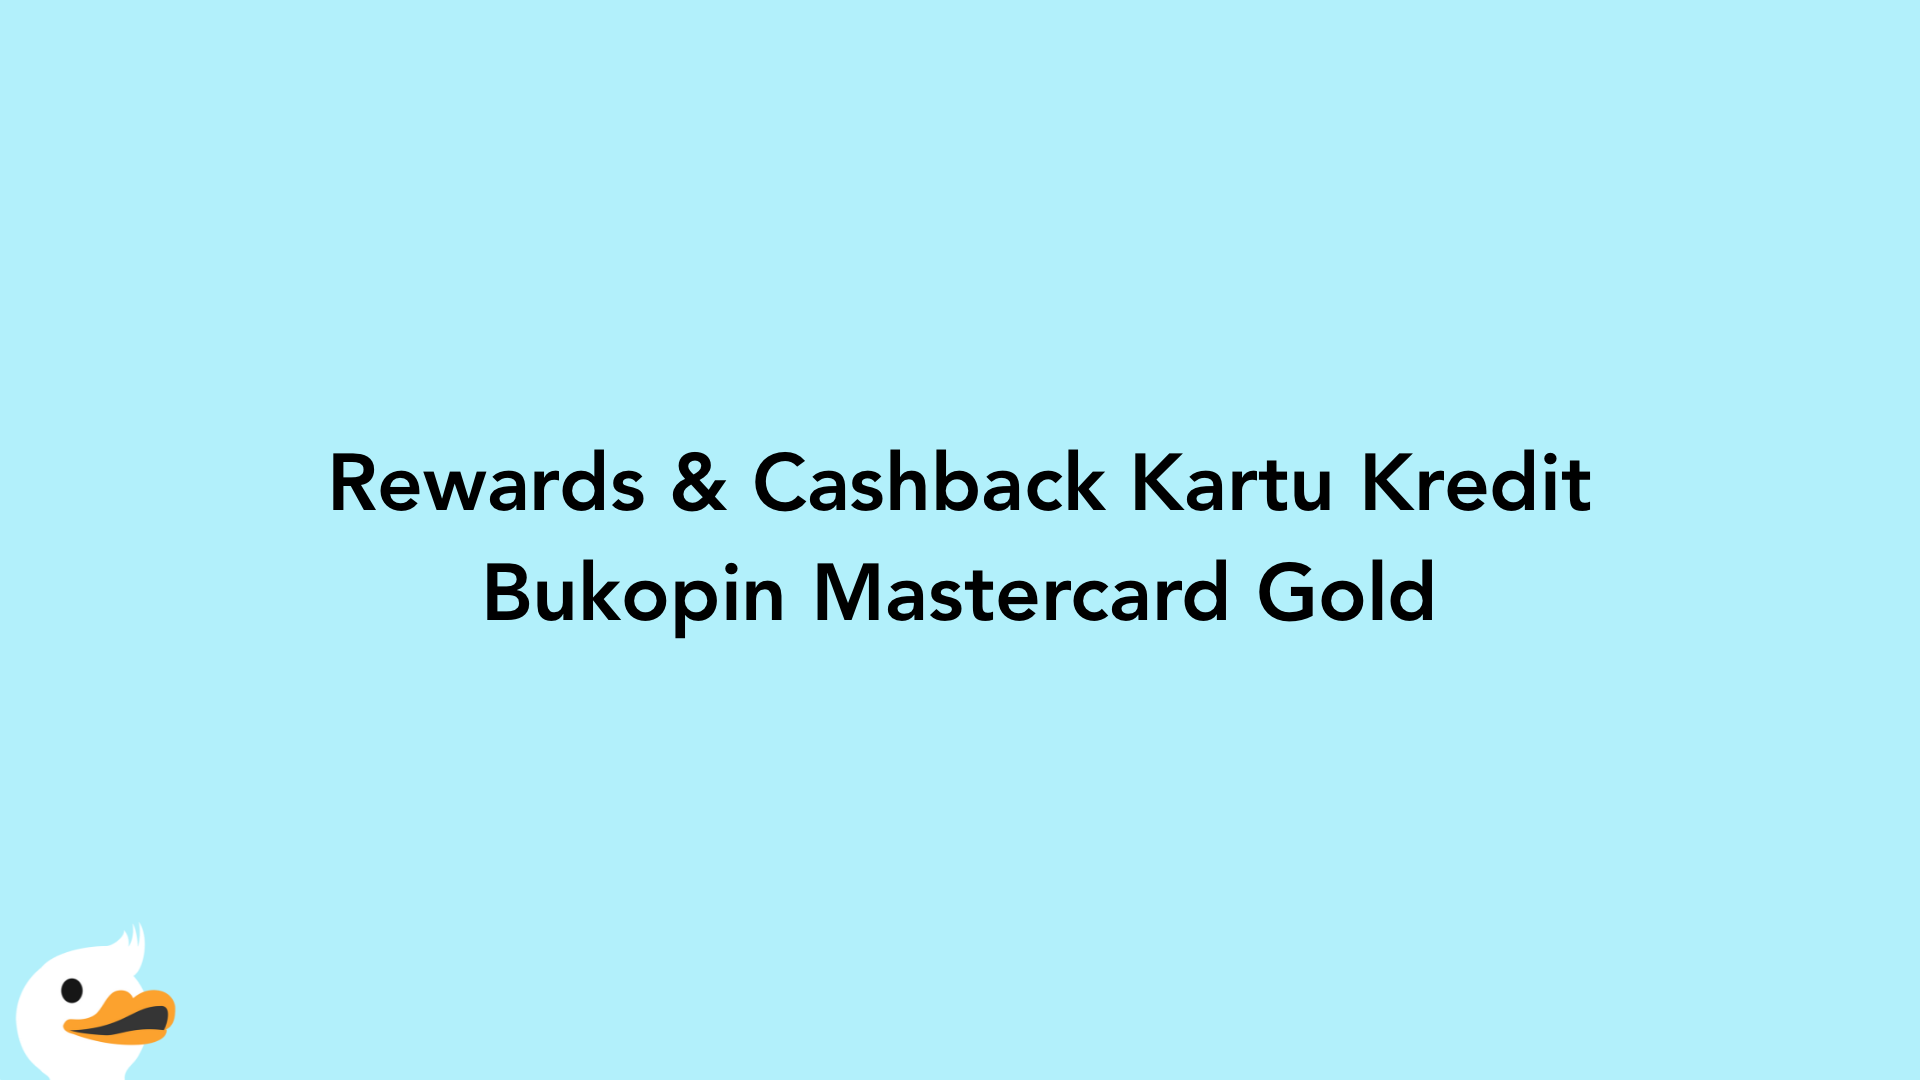 Rewards & Cashback Kartu Kredit Bukopin Mastercard Gold